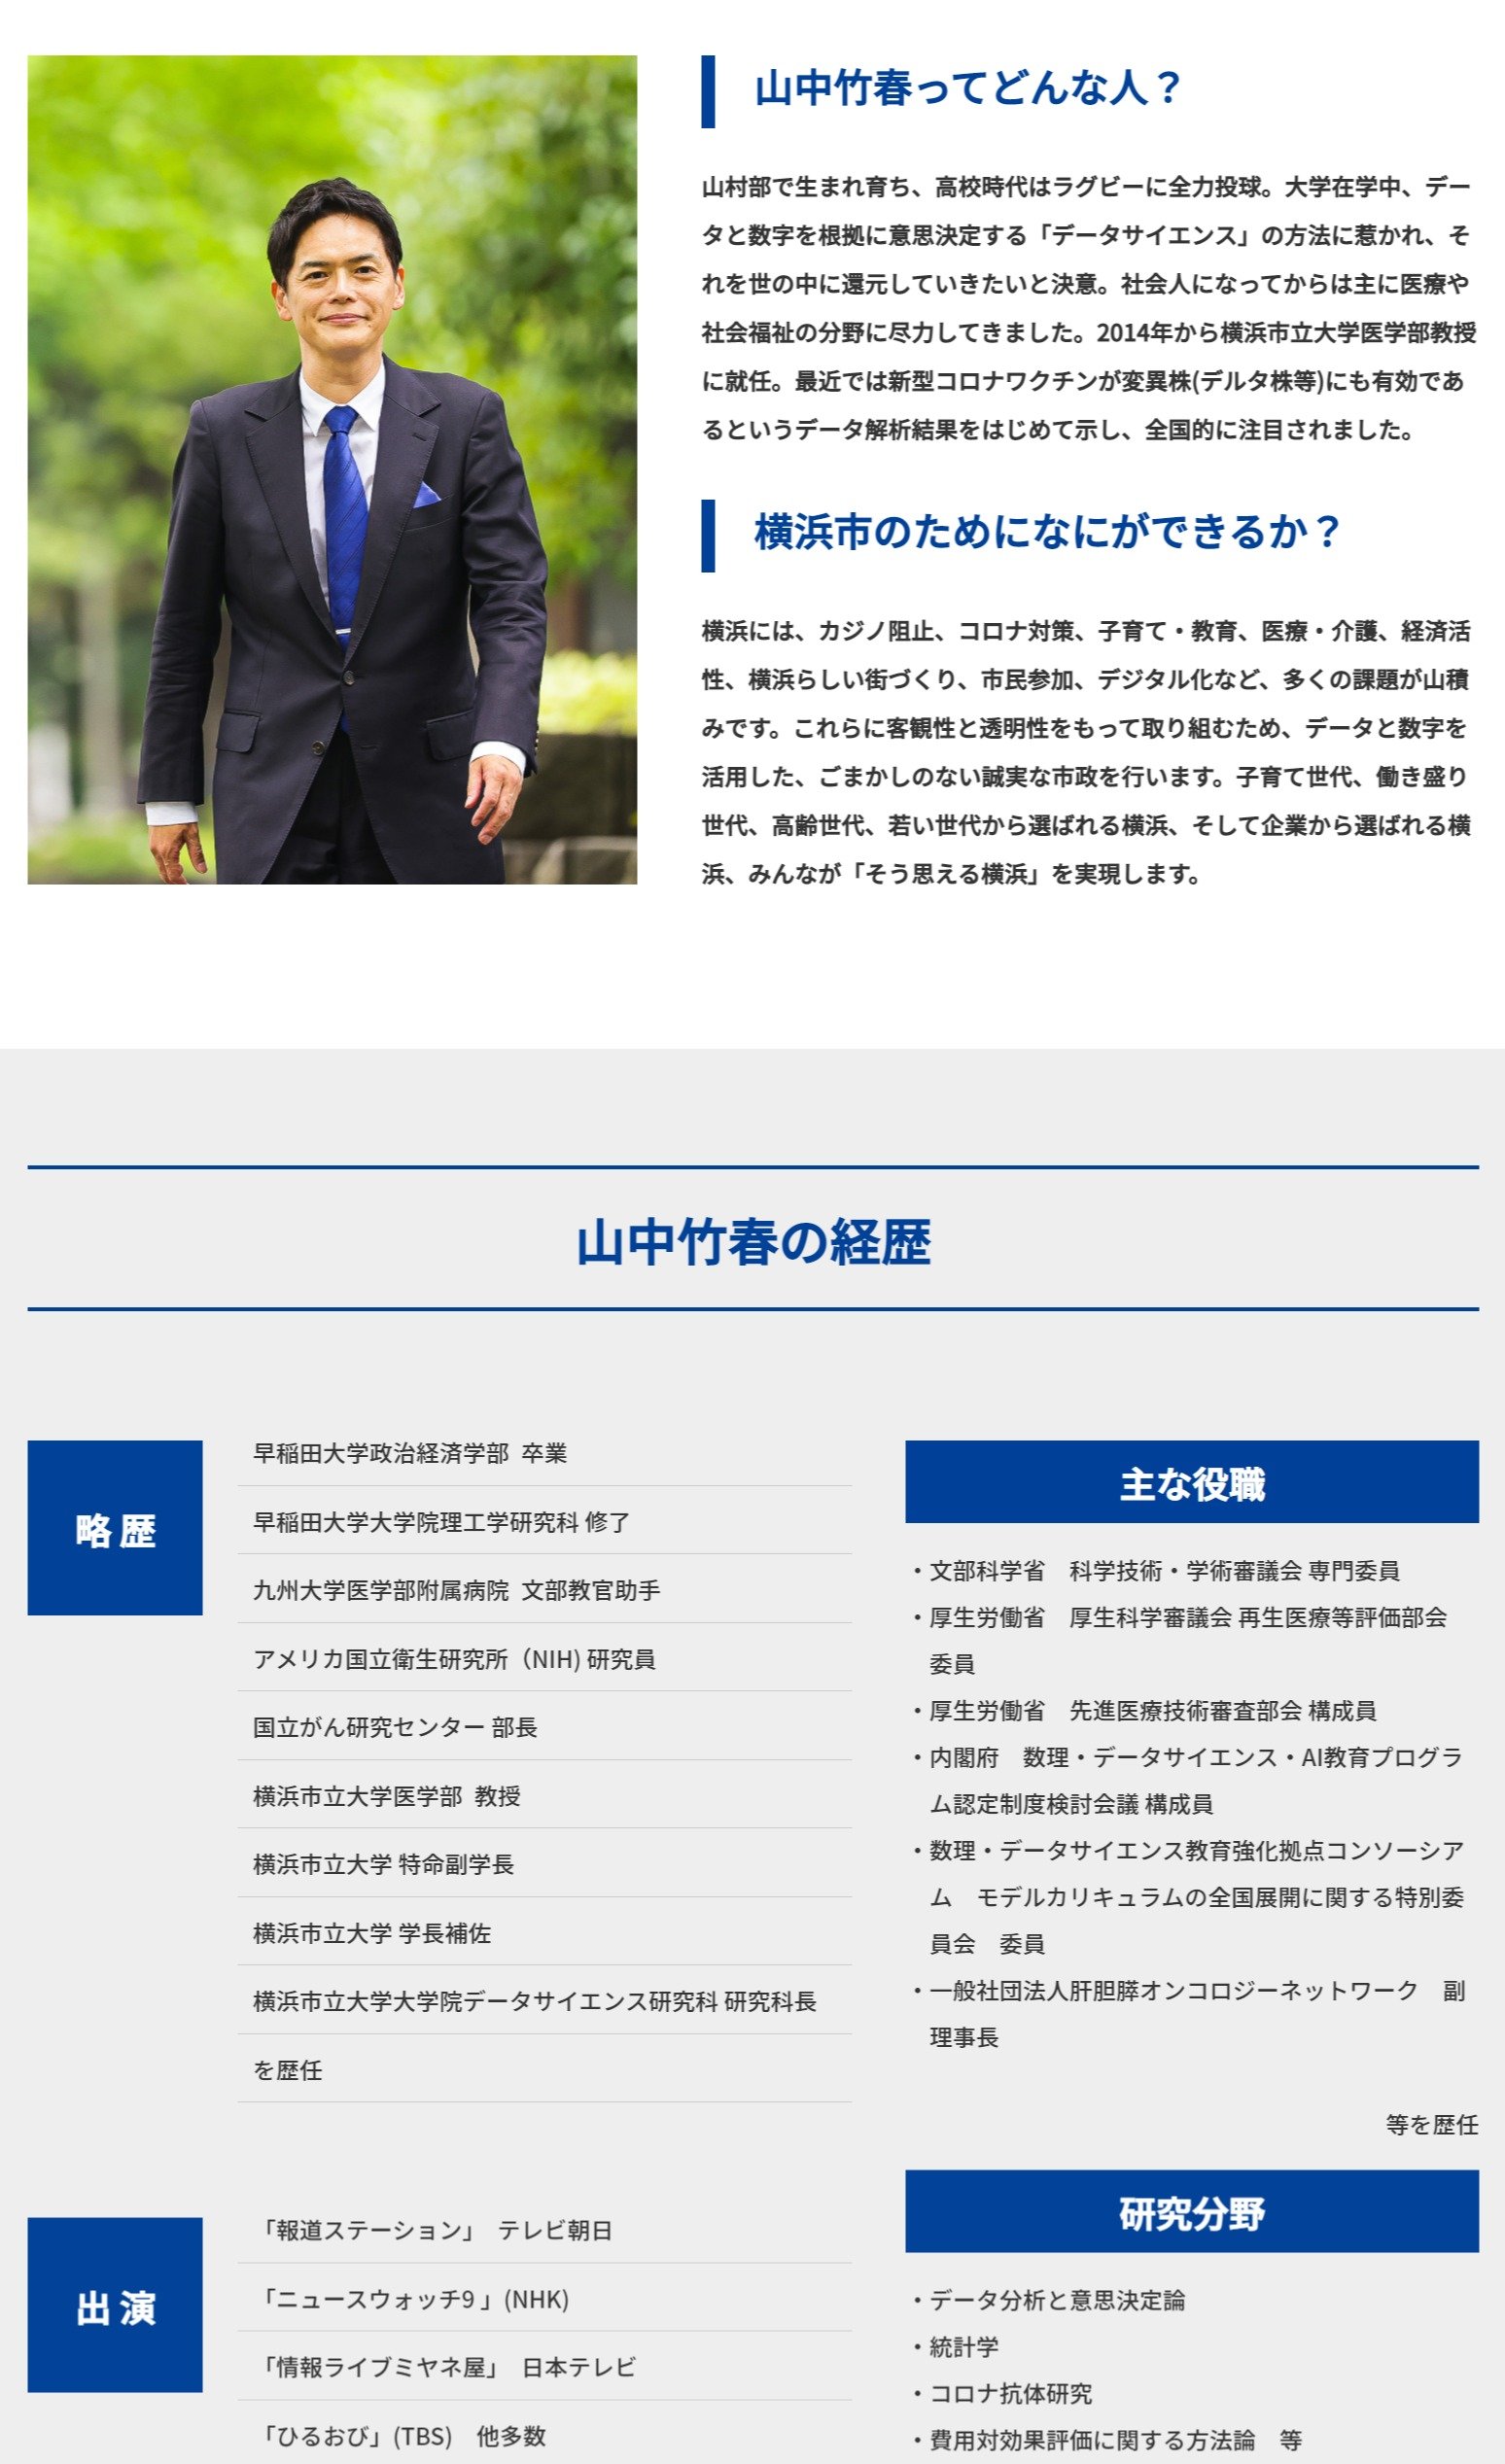 横浜の新市長はデータサイエンティスト　「コロナワクチンはデルタ株に効く」研究でも注目